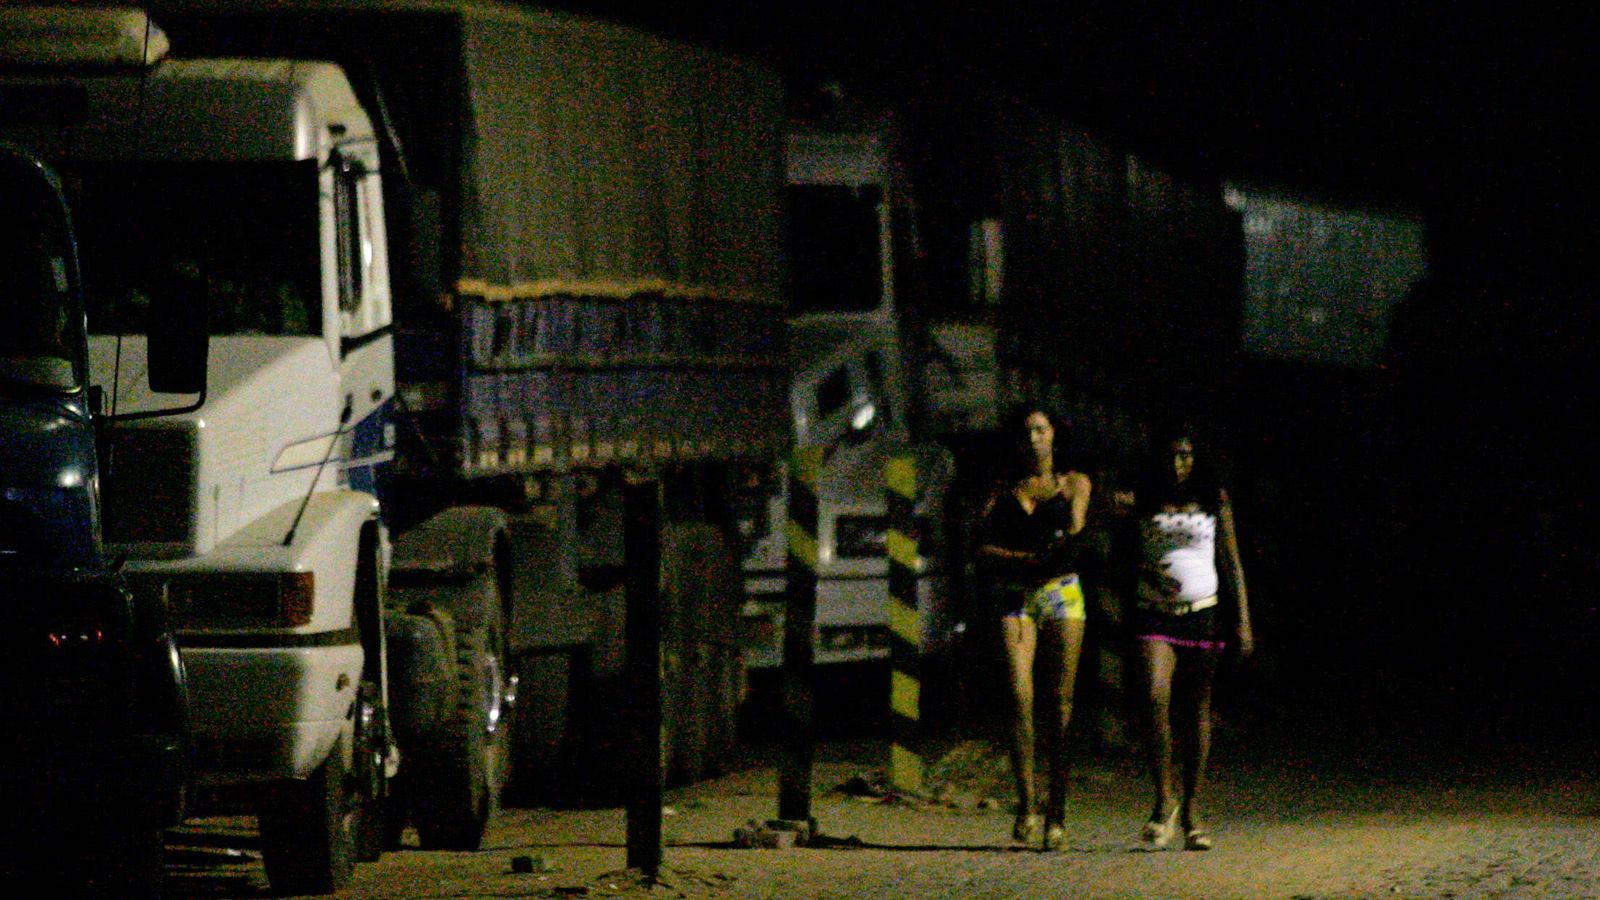 Foto: Prostitutas brasileñas en una gasolinera en Teresina, en el noreste del país (Reuters).